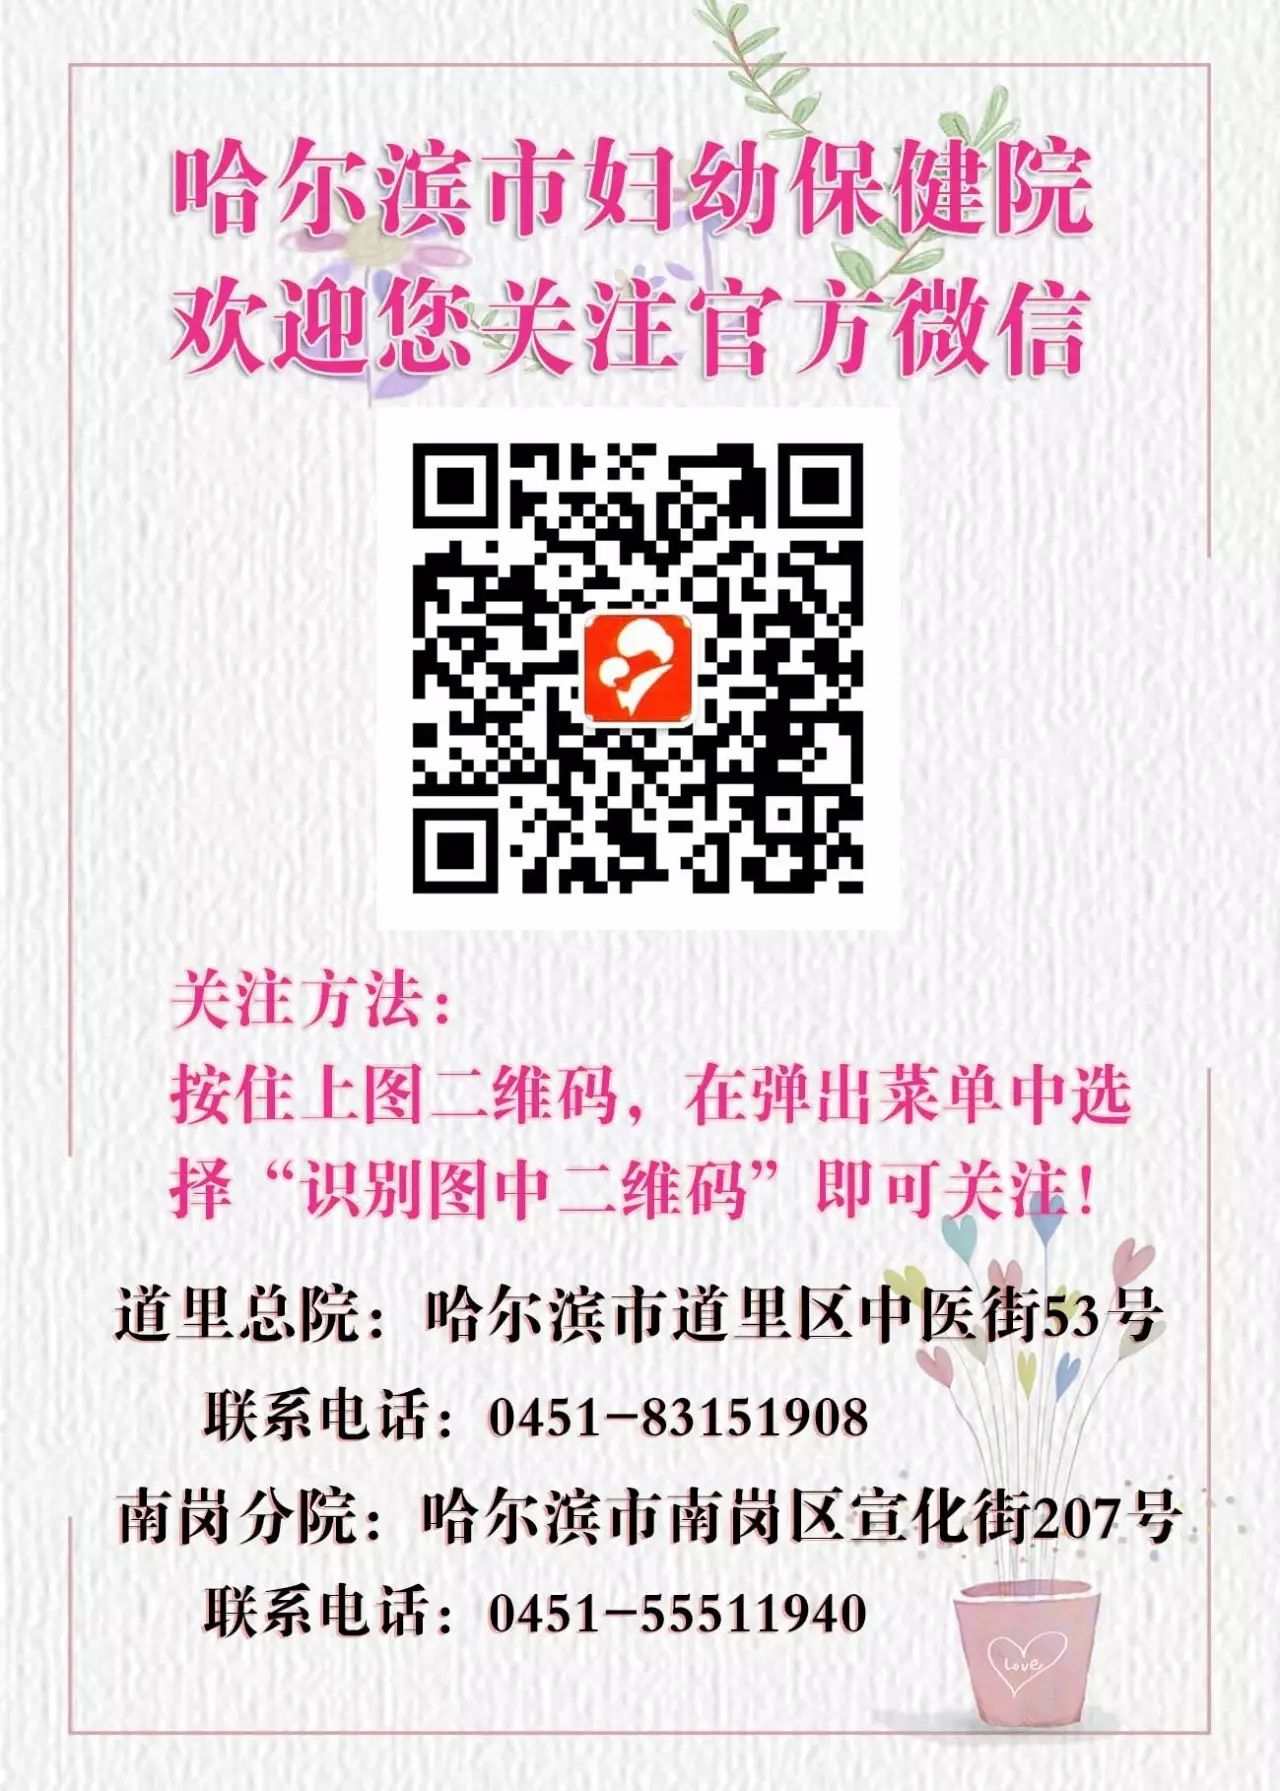 哈尔滨市妇幼保健计划生育服务中心组织学习“党的十九大精神”专题辅导